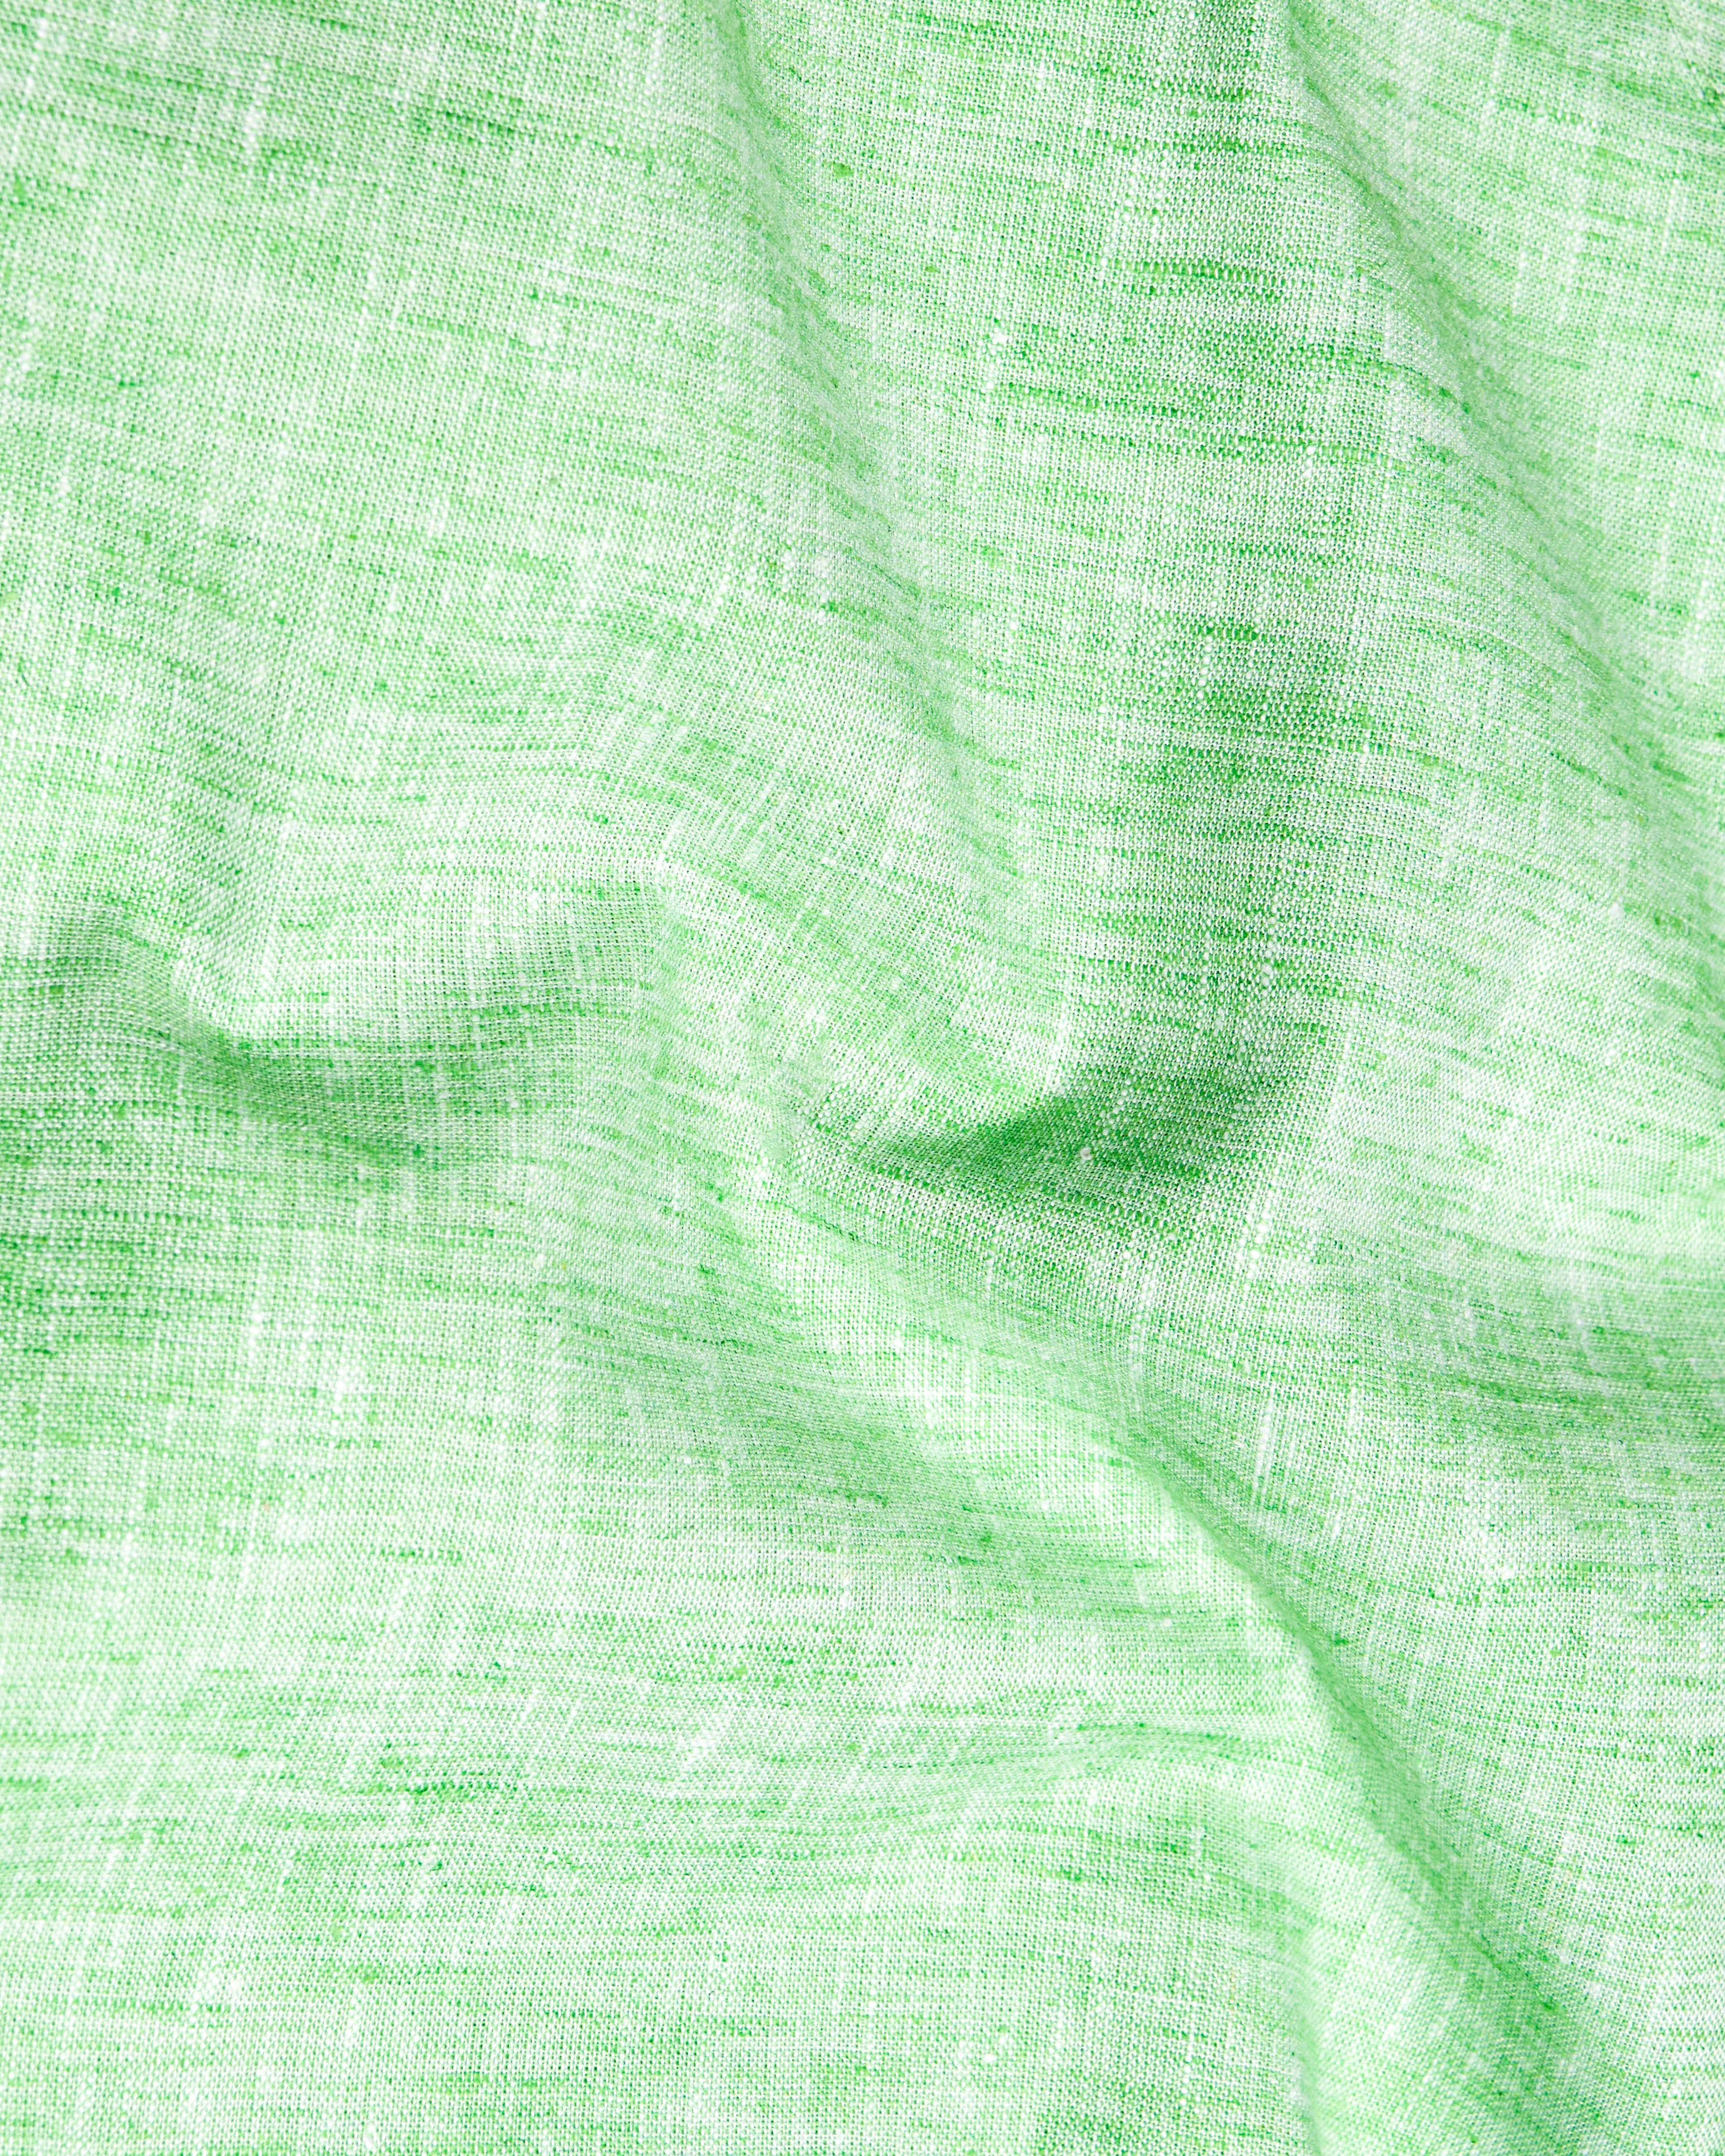 Madang Green Luxurious Linen Kurta Shirt 9603-KS-38,9603-KS-H-38,9603-KS-39,9603-KS-H-39,9603-KS-40,9603-KS-H-40,9603-KS-42,9603-KS-H-42,9603-KS-44,9603-KS-H-44,9603-KS-46,9603-KS-H-46,9603-KS-48,9603-KS-H-48,9603-KS-50,9603-KS-H-50,9603-KS-52,9603-KS-H-52